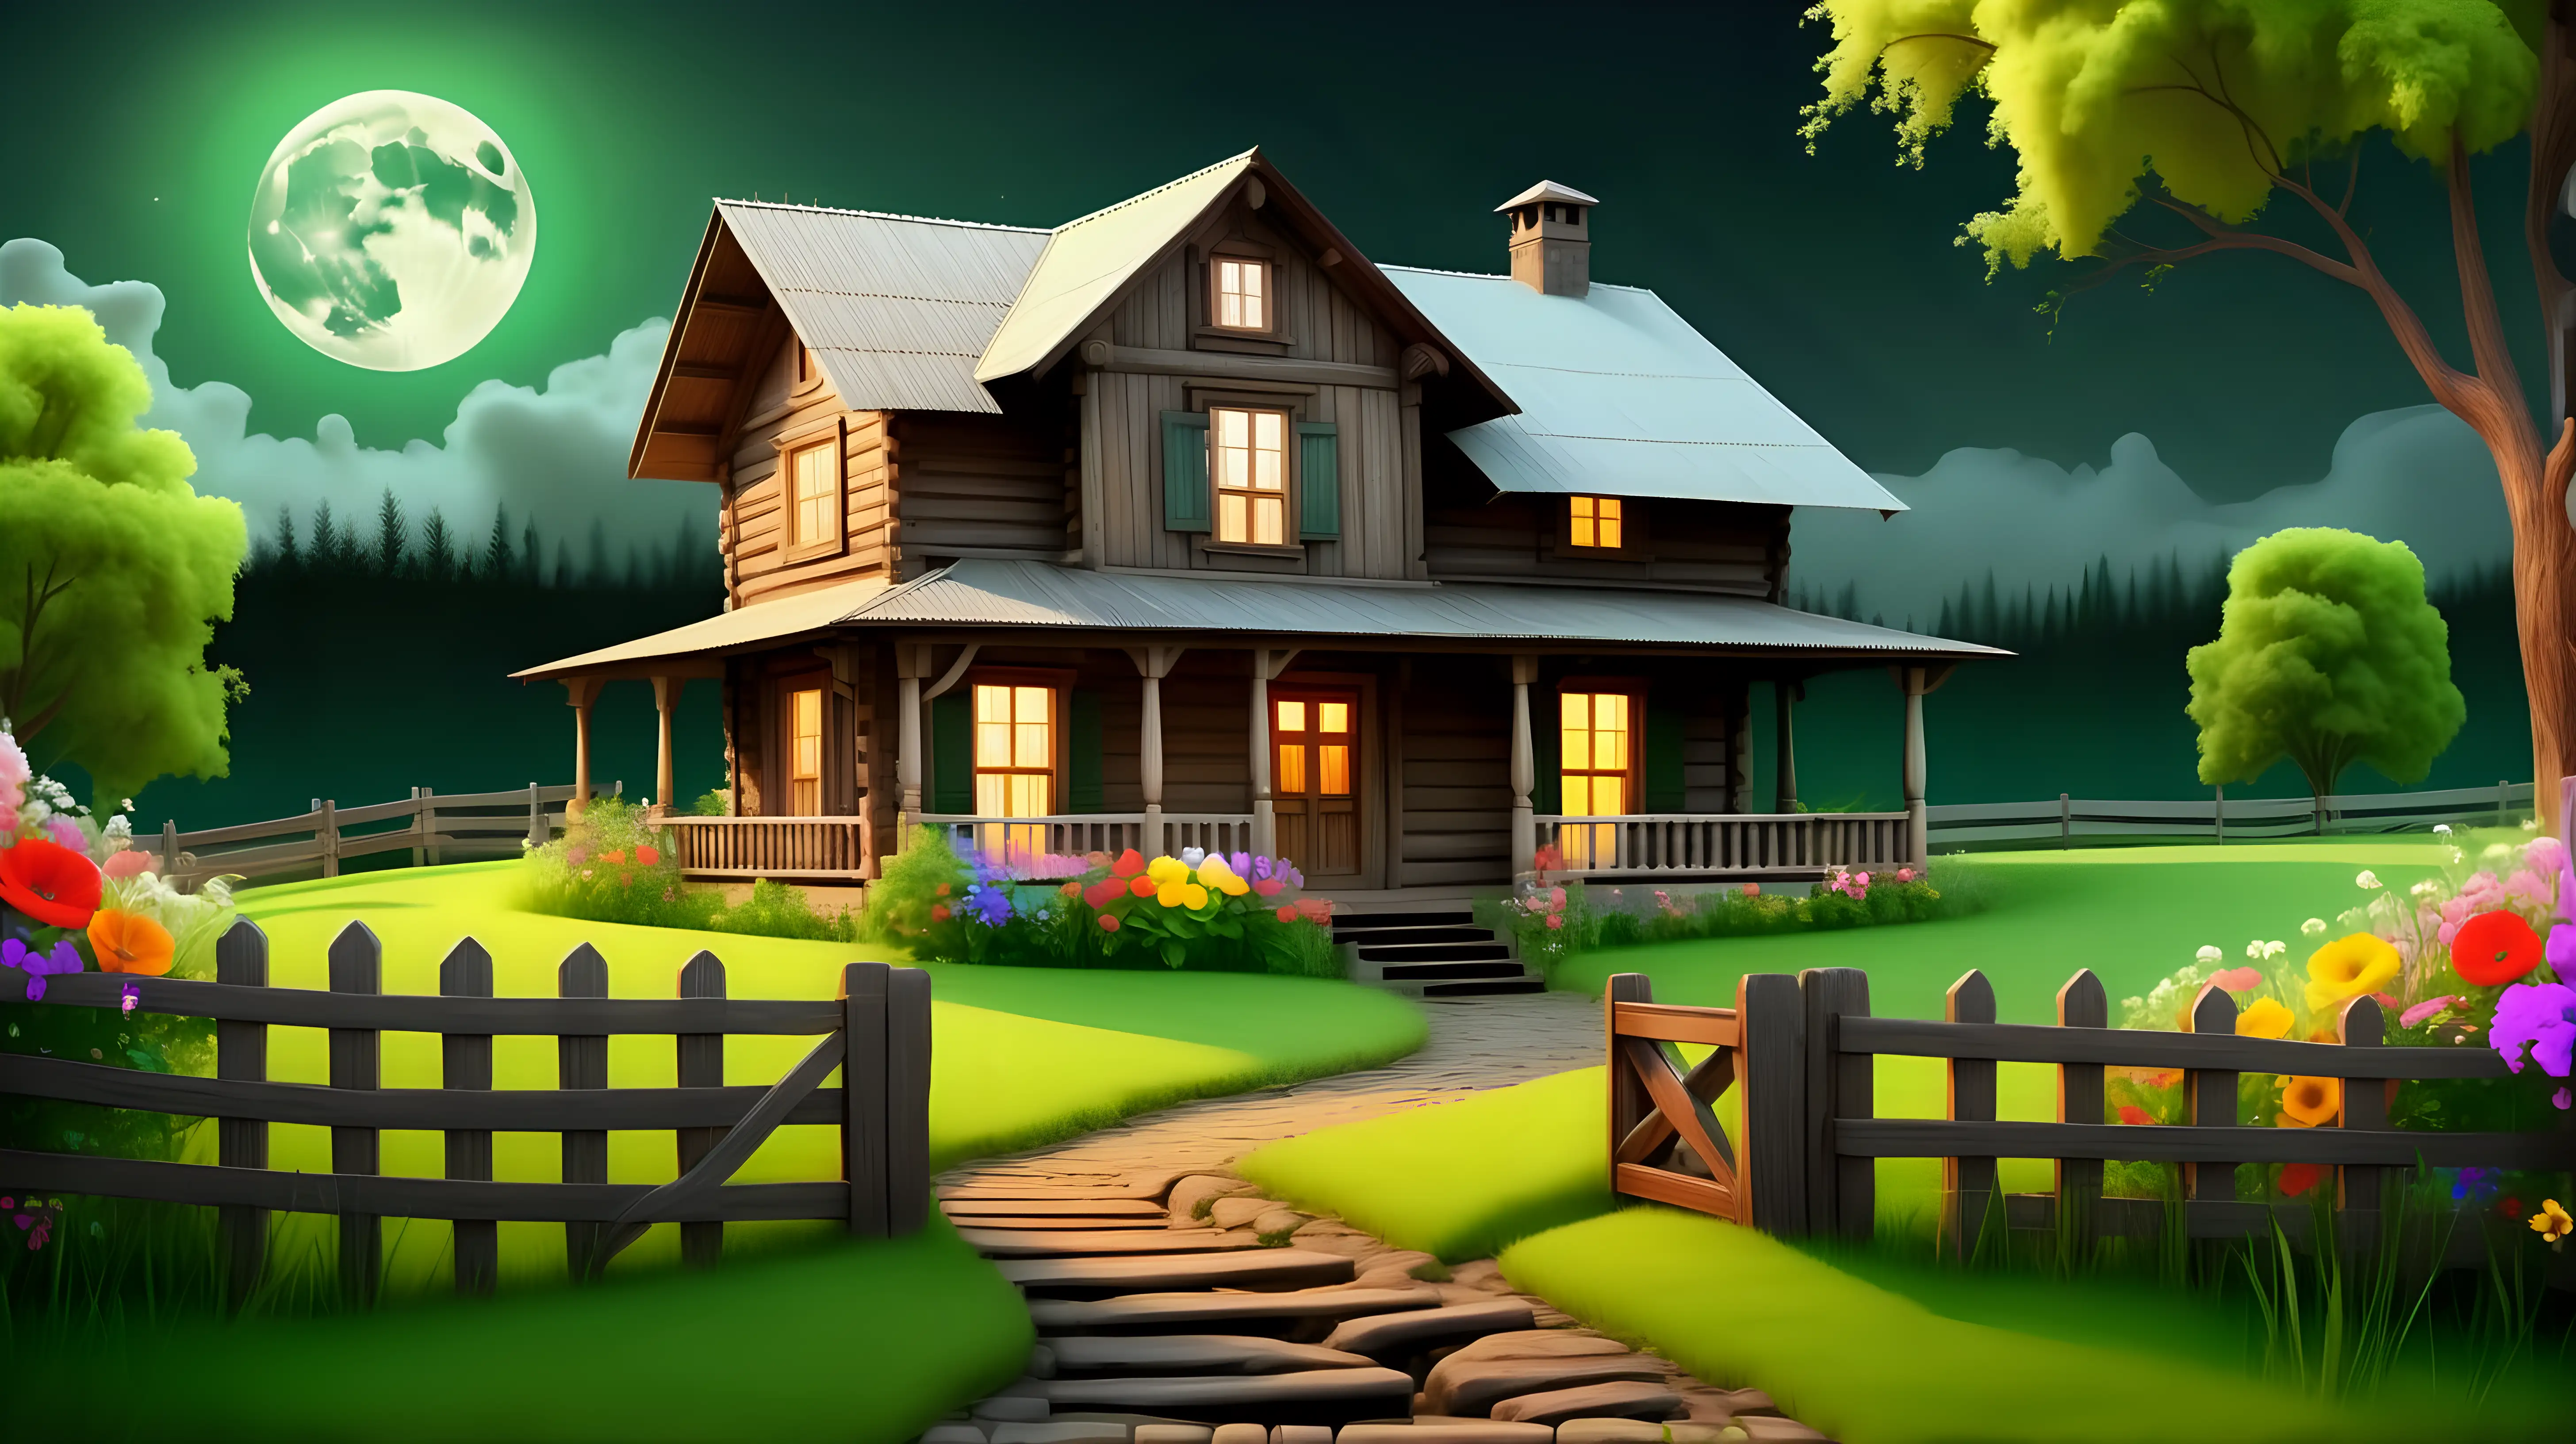 O casa veche de lemn, noapte cu o luna plina, gard de lemn pe un drum de tara, iarba verde cu multe flori colorate, cascada pe fundal, lumina la geamuril, cerul verde

